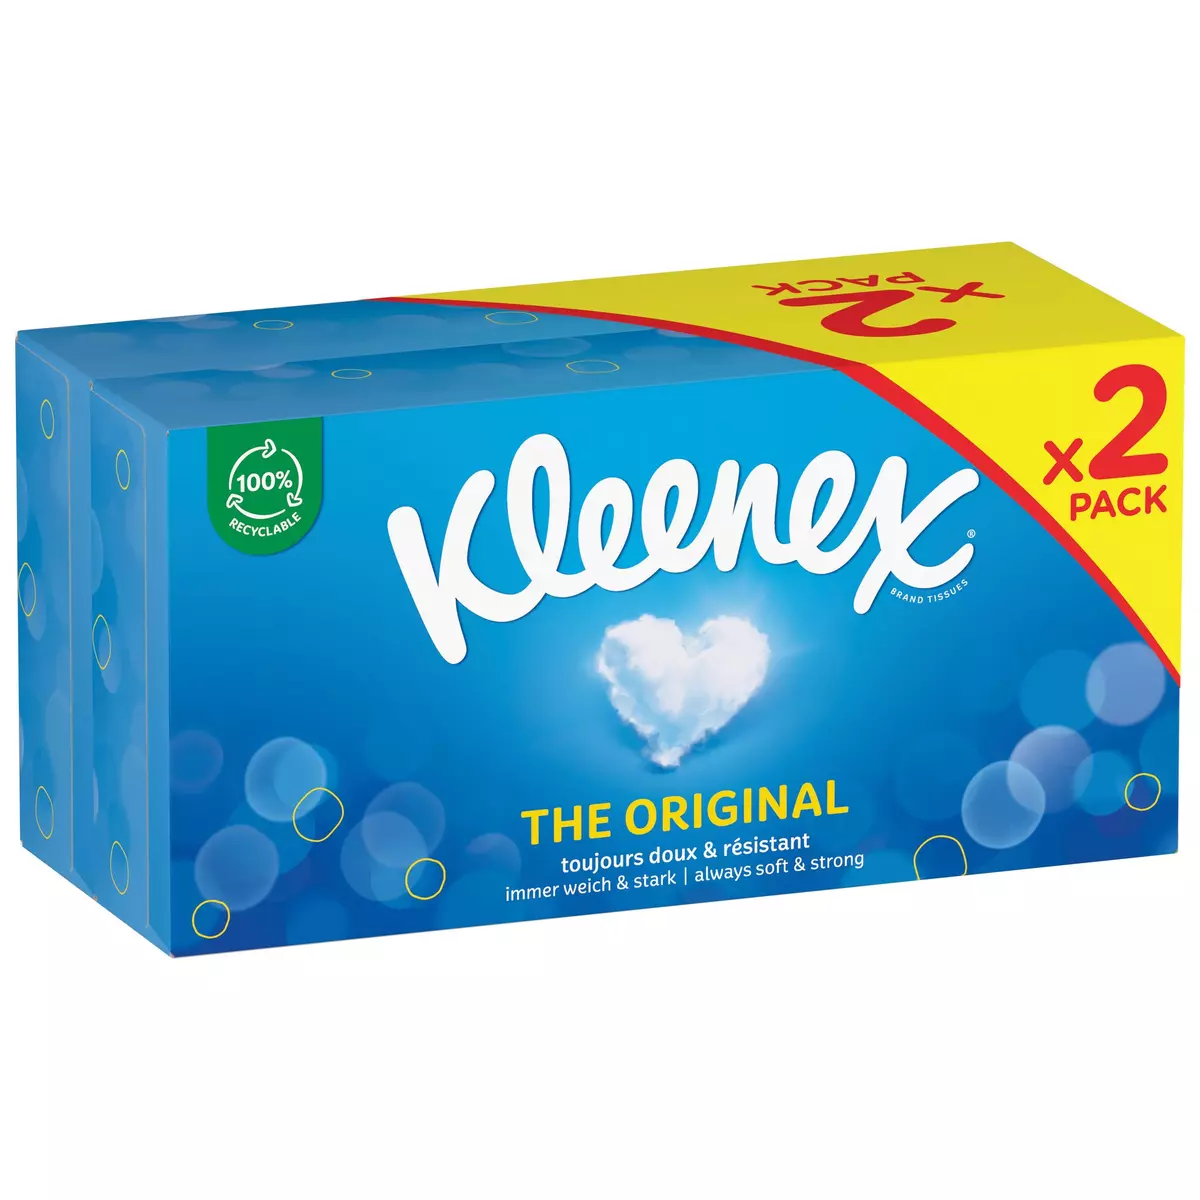 Boite de 100 mouchoirs Kleenex, lot de 21 boites